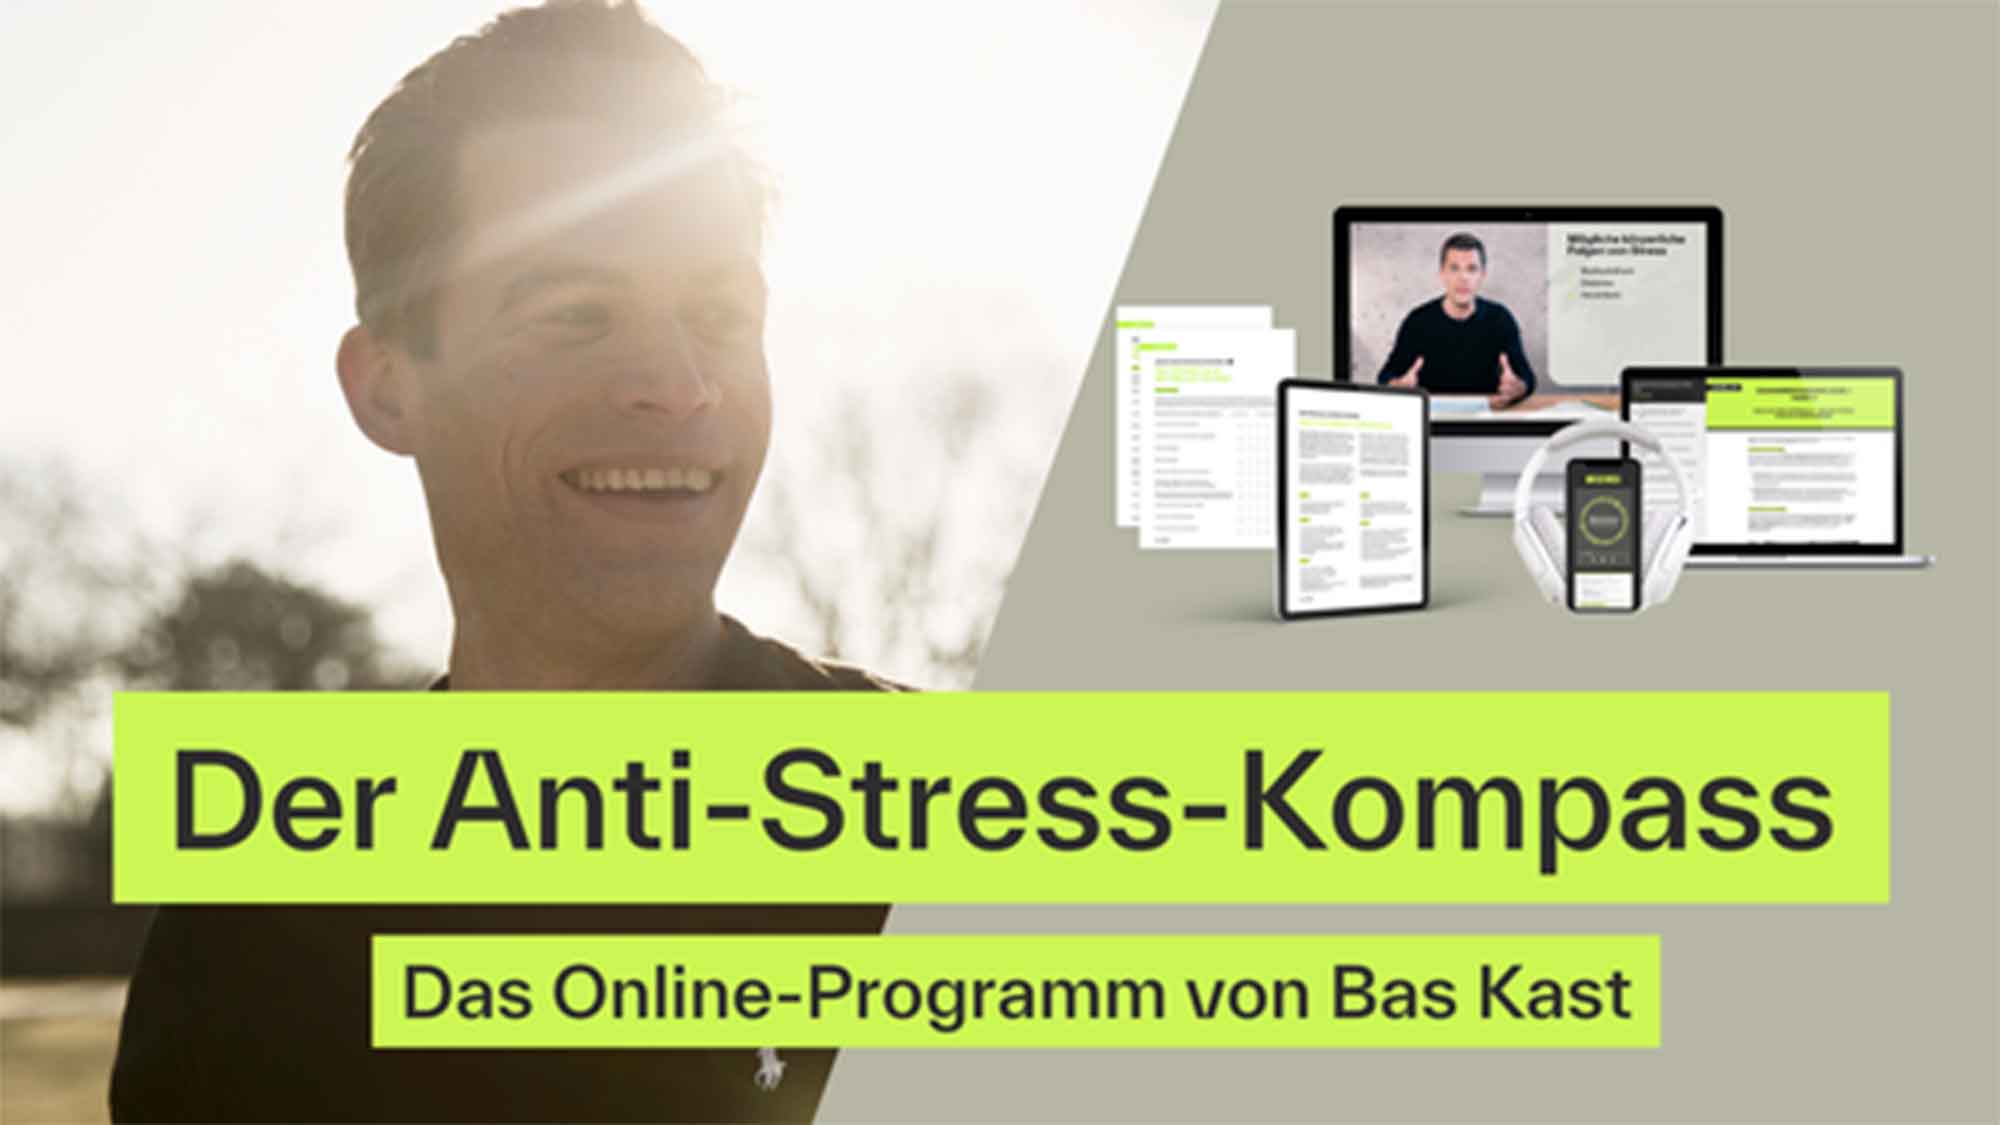 Bas Kast präsentiert Anti Stress Programm auf der digitalen Plattform »Hello Health«